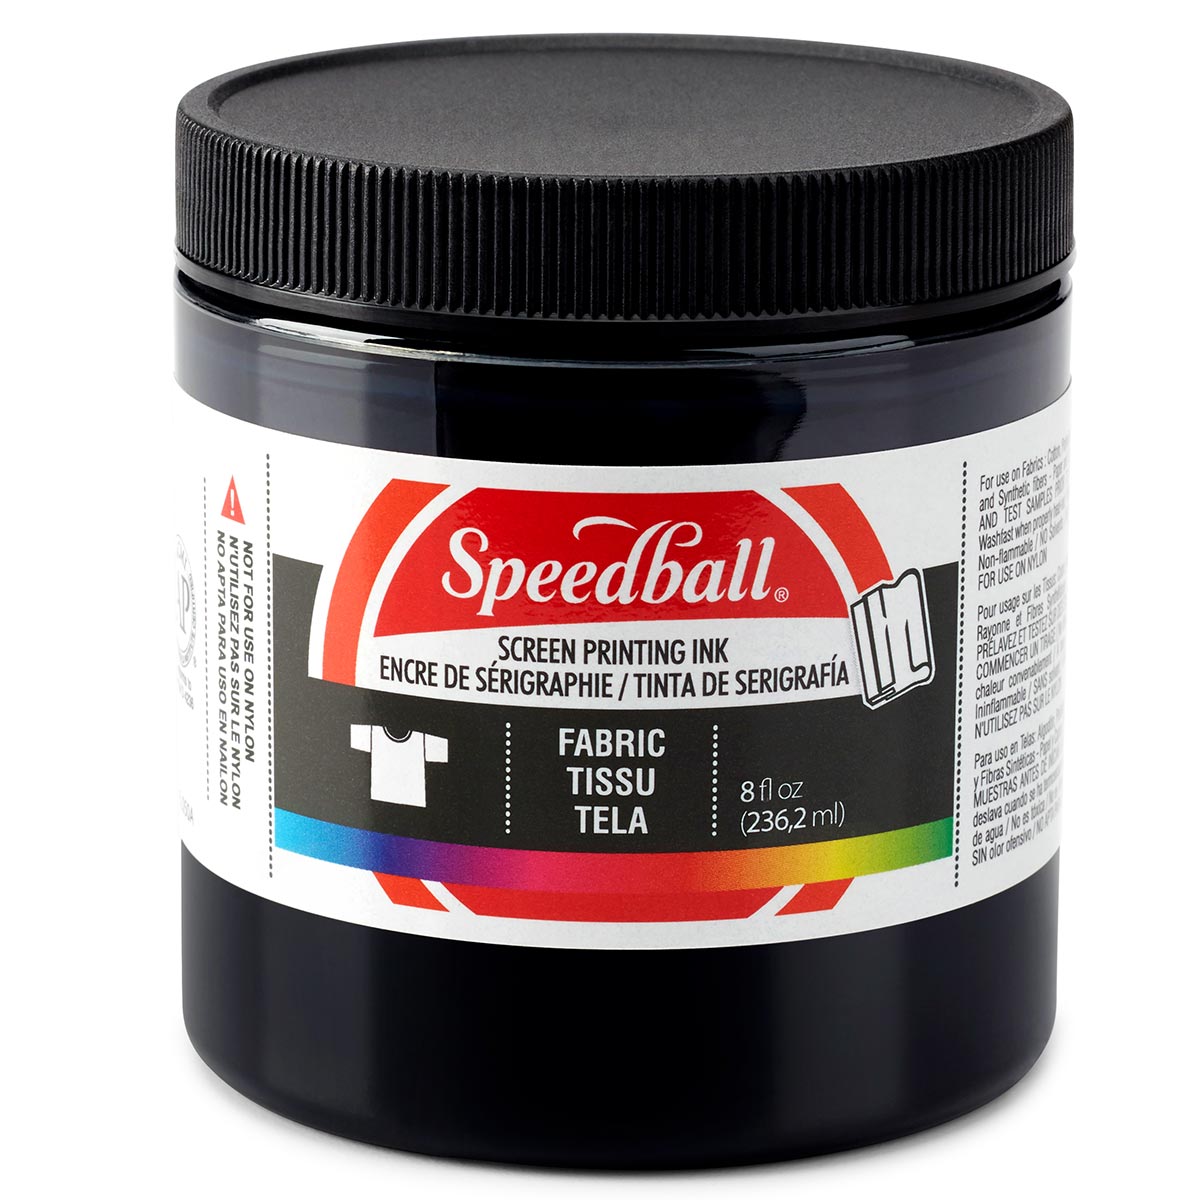 Speedball - Encre de sérigraphie pour tissu 236 ml (8 oz) - Noir